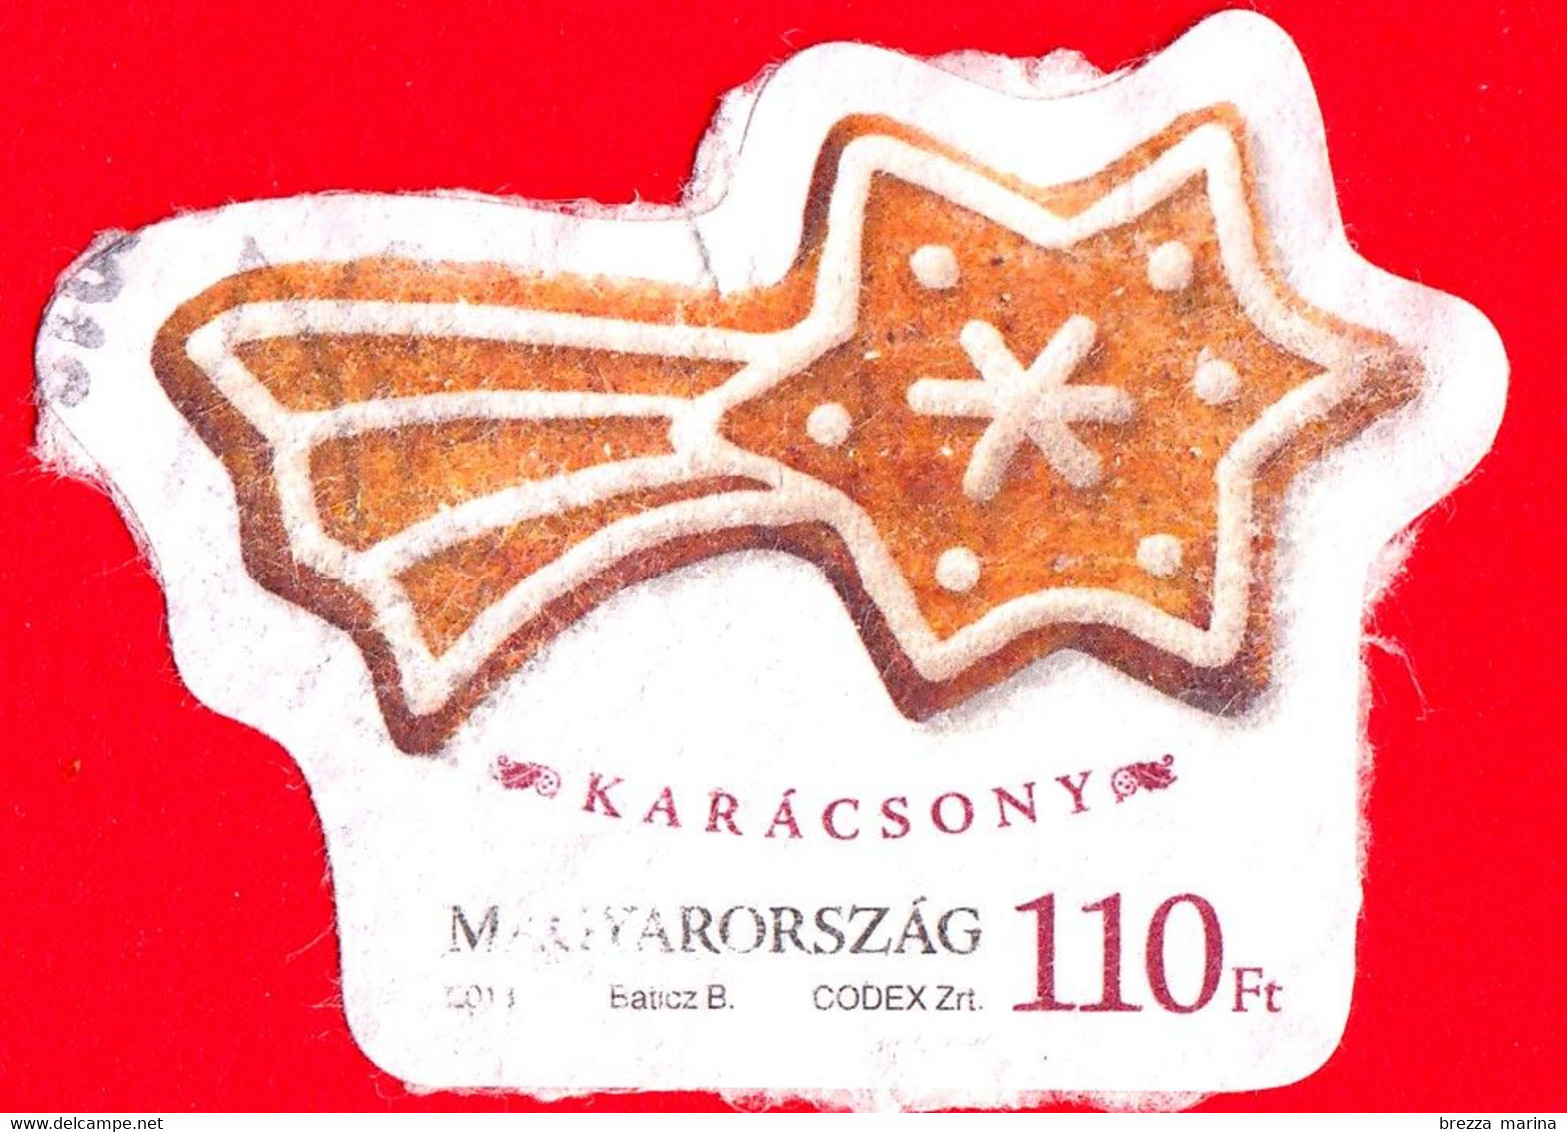 UNGHERIA - Magyar - 2013 - Natale - Christmas - Noel - Navidad - Stella - 110 - Used Stamps